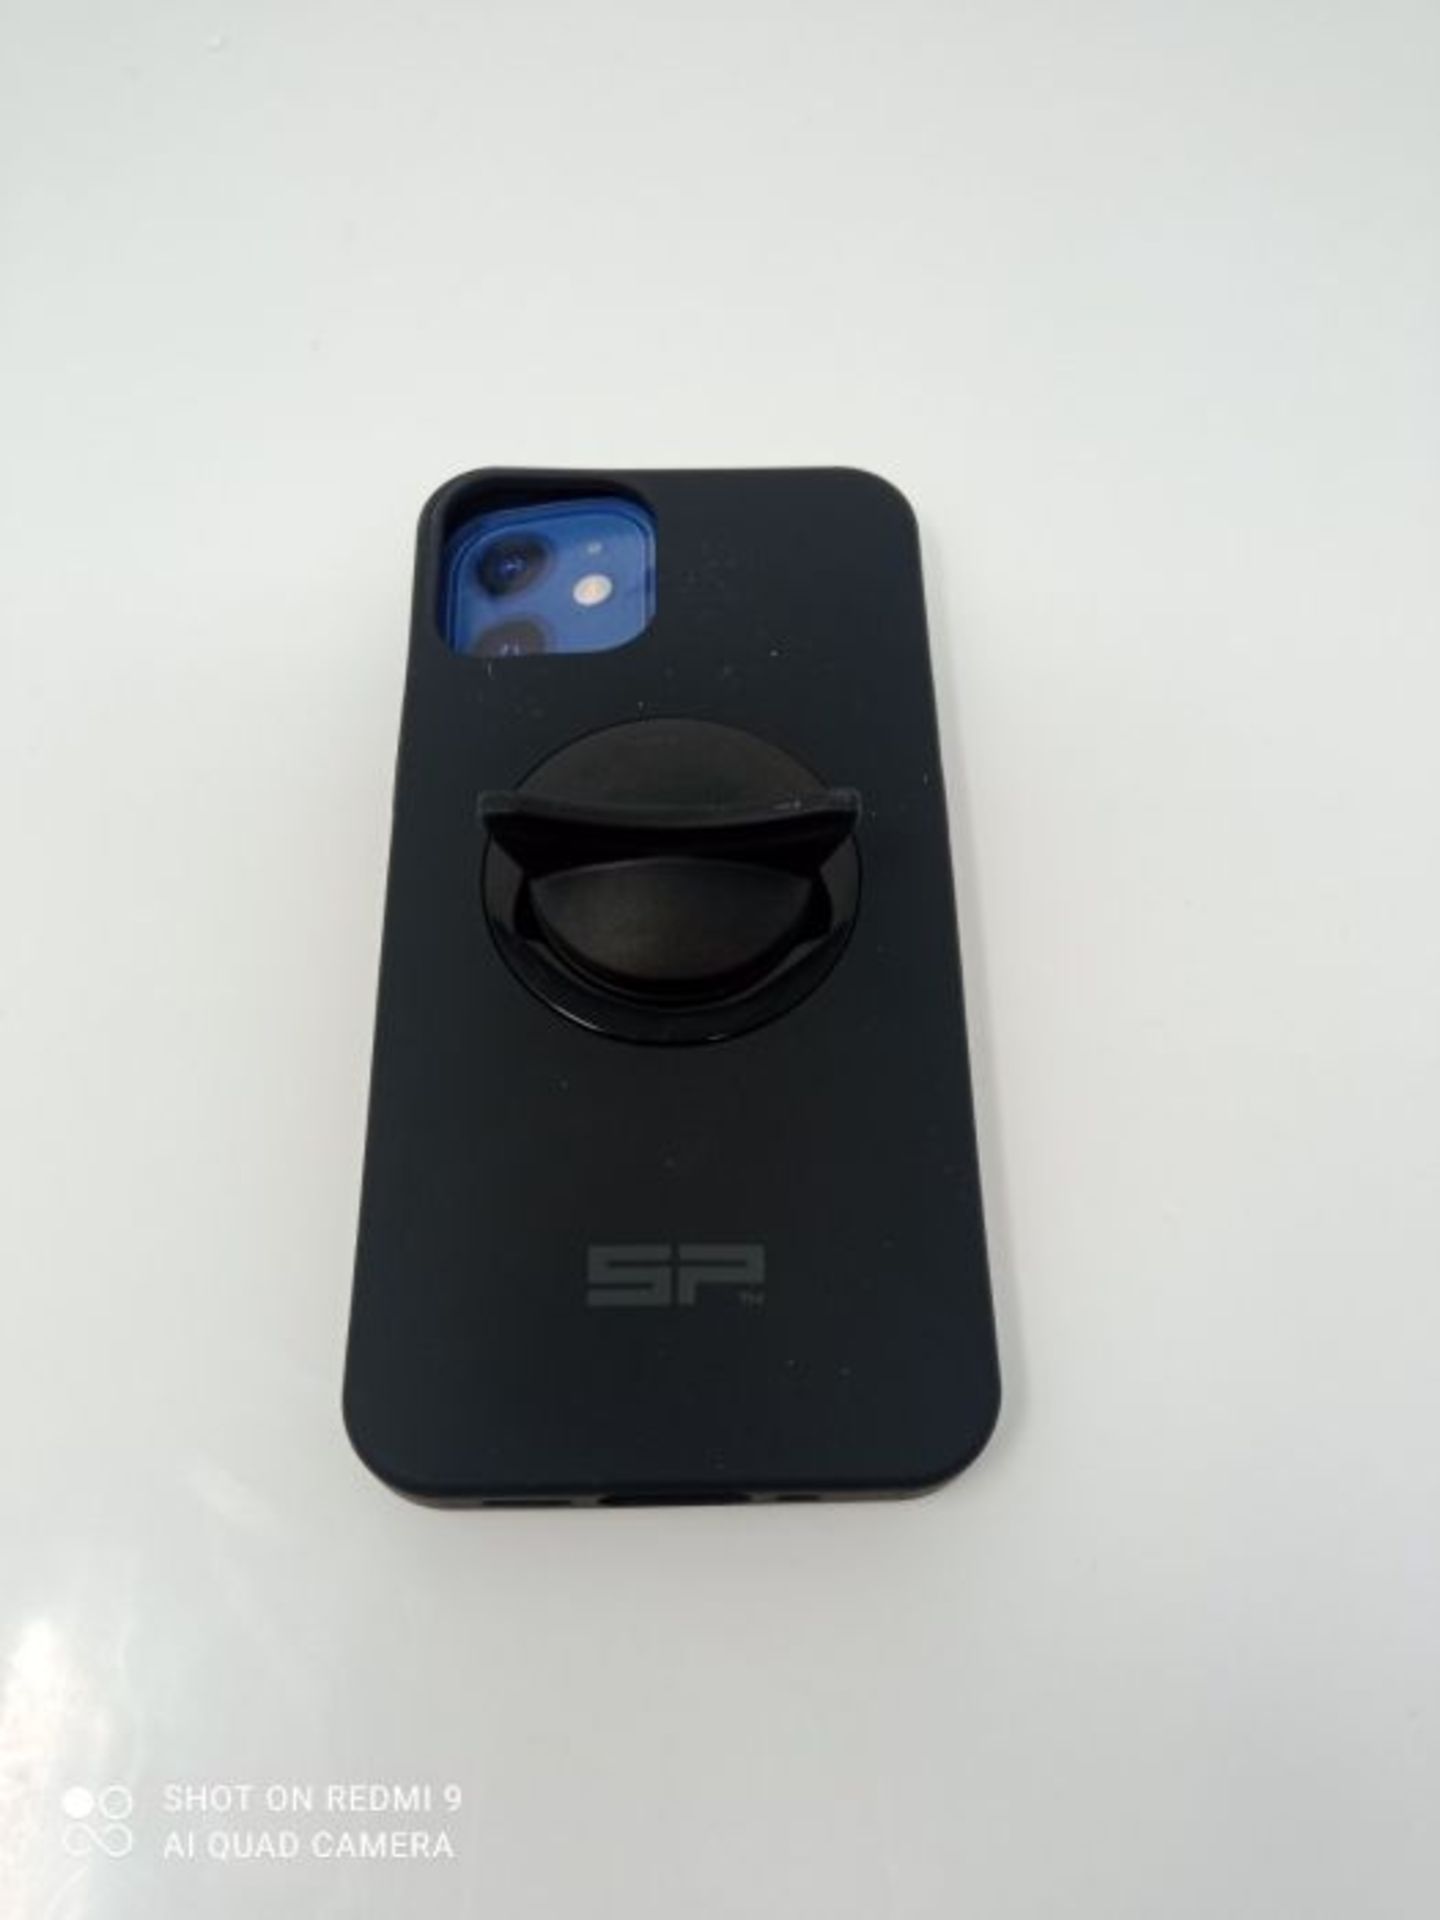 SP Phone Case iPhone 12 mini - Image 3 of 3